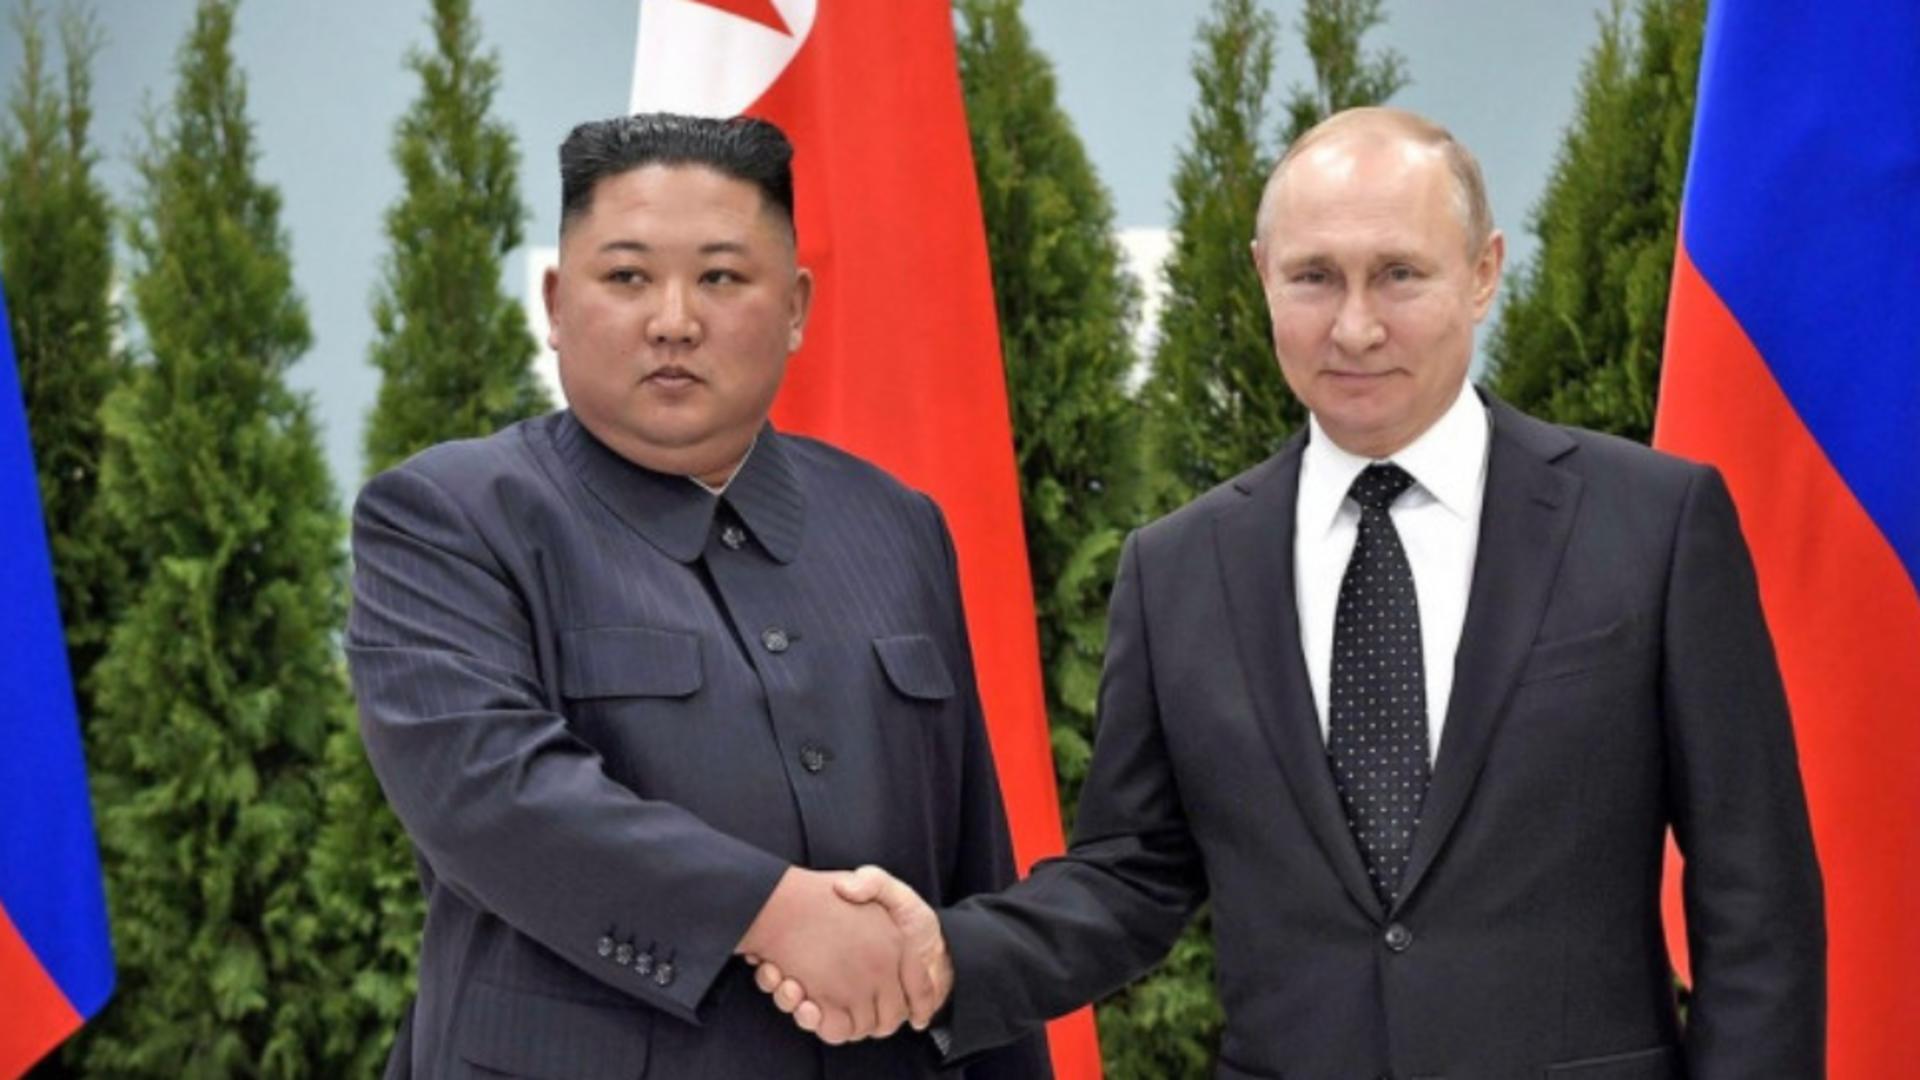 Kim Jong-Un și Vladimir Putin, aliați în războiul din Ucraina Foto: Profi Media